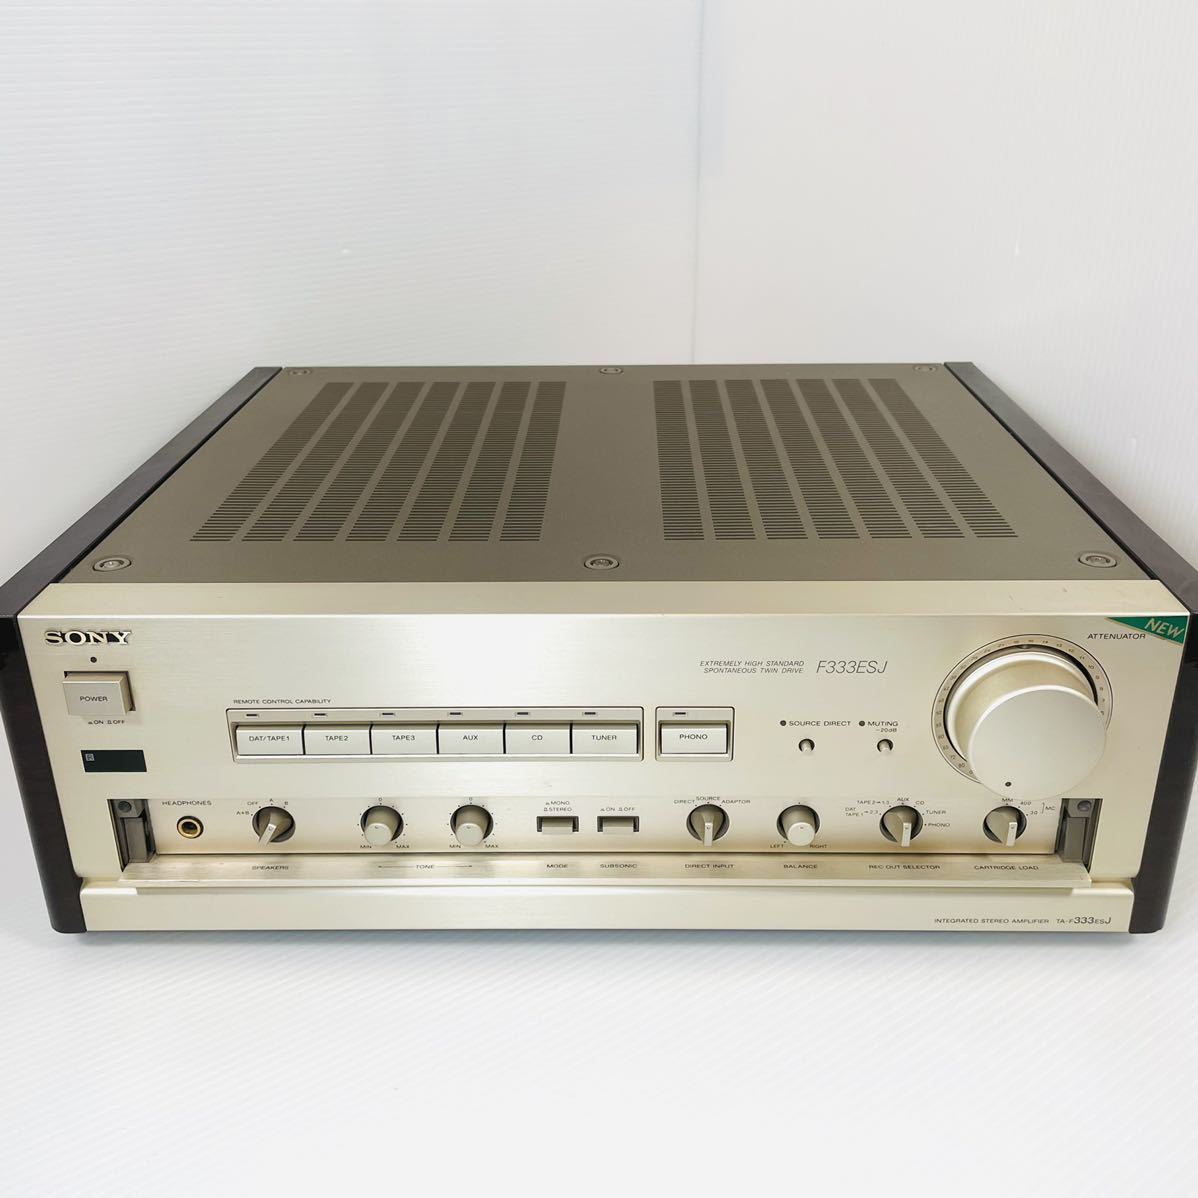 SONY TA-F333ESJ プリメインアンプ ソニー オーディオ 音響機器